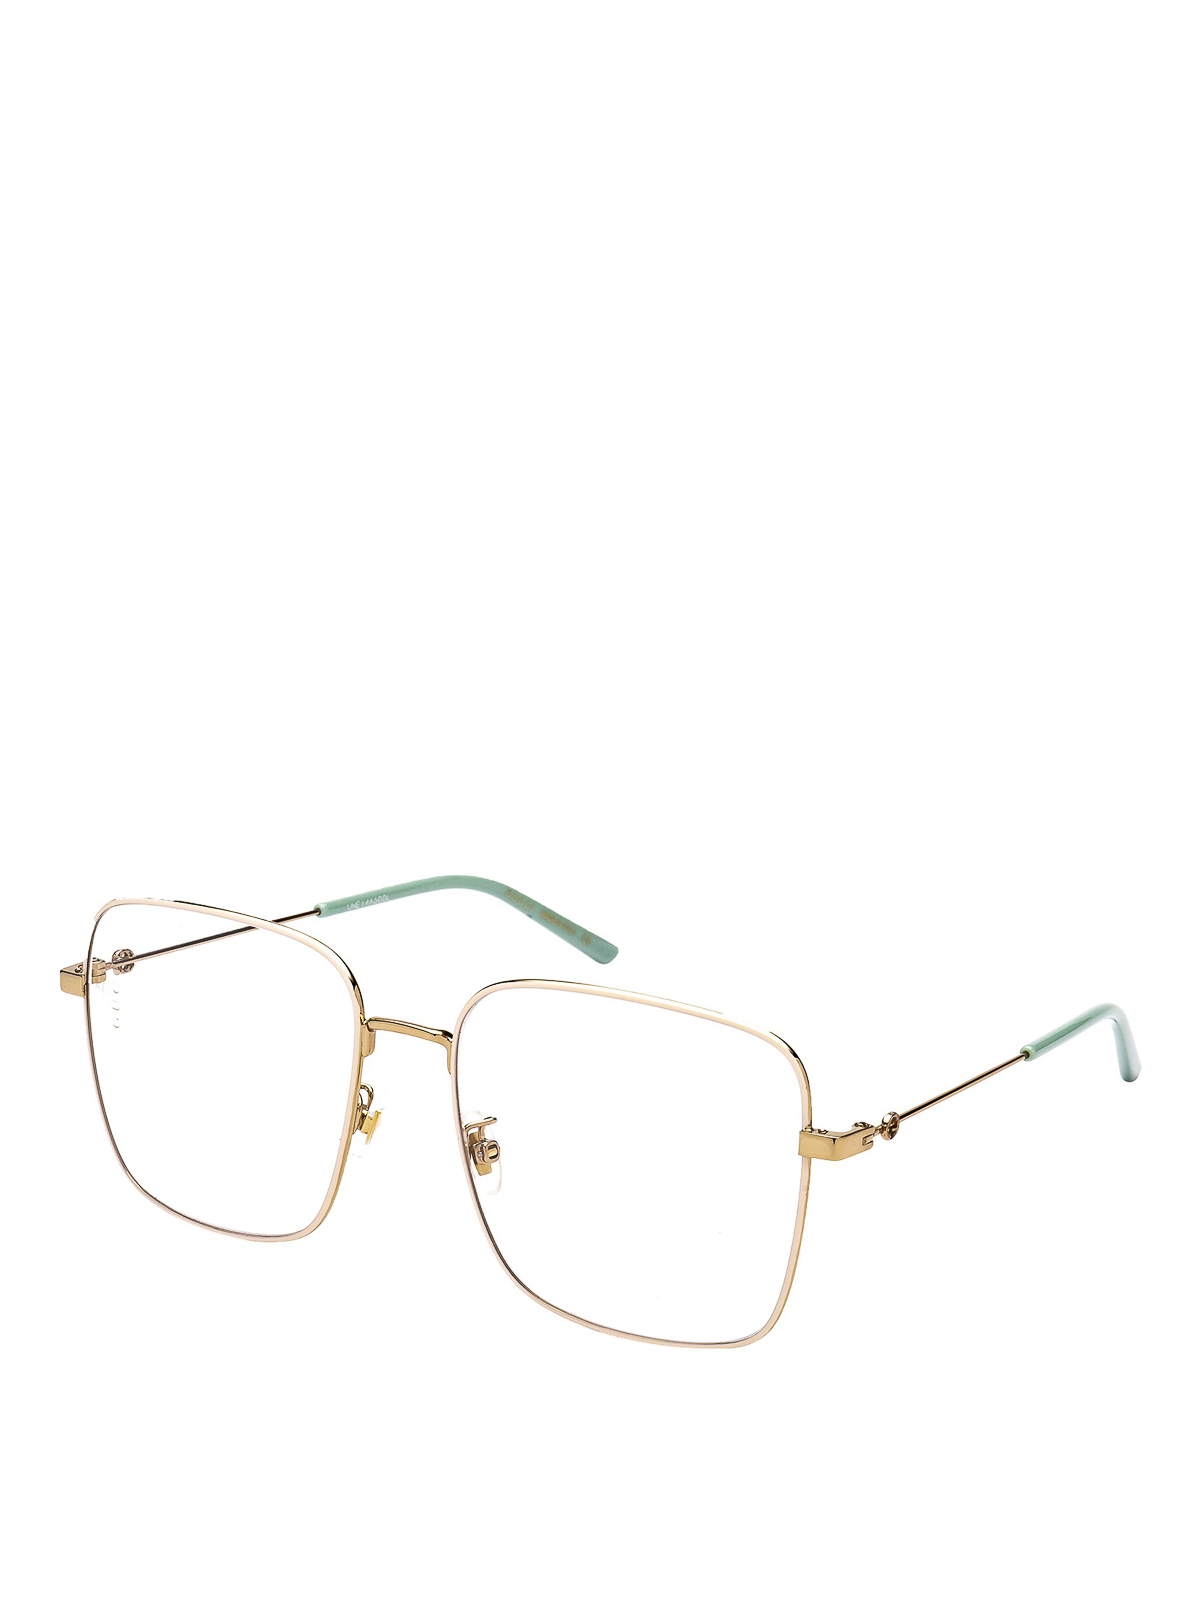 føderation madlavning Tips Glasses Gucci - Gold-tone rectangular optical glasses - GG0445O004